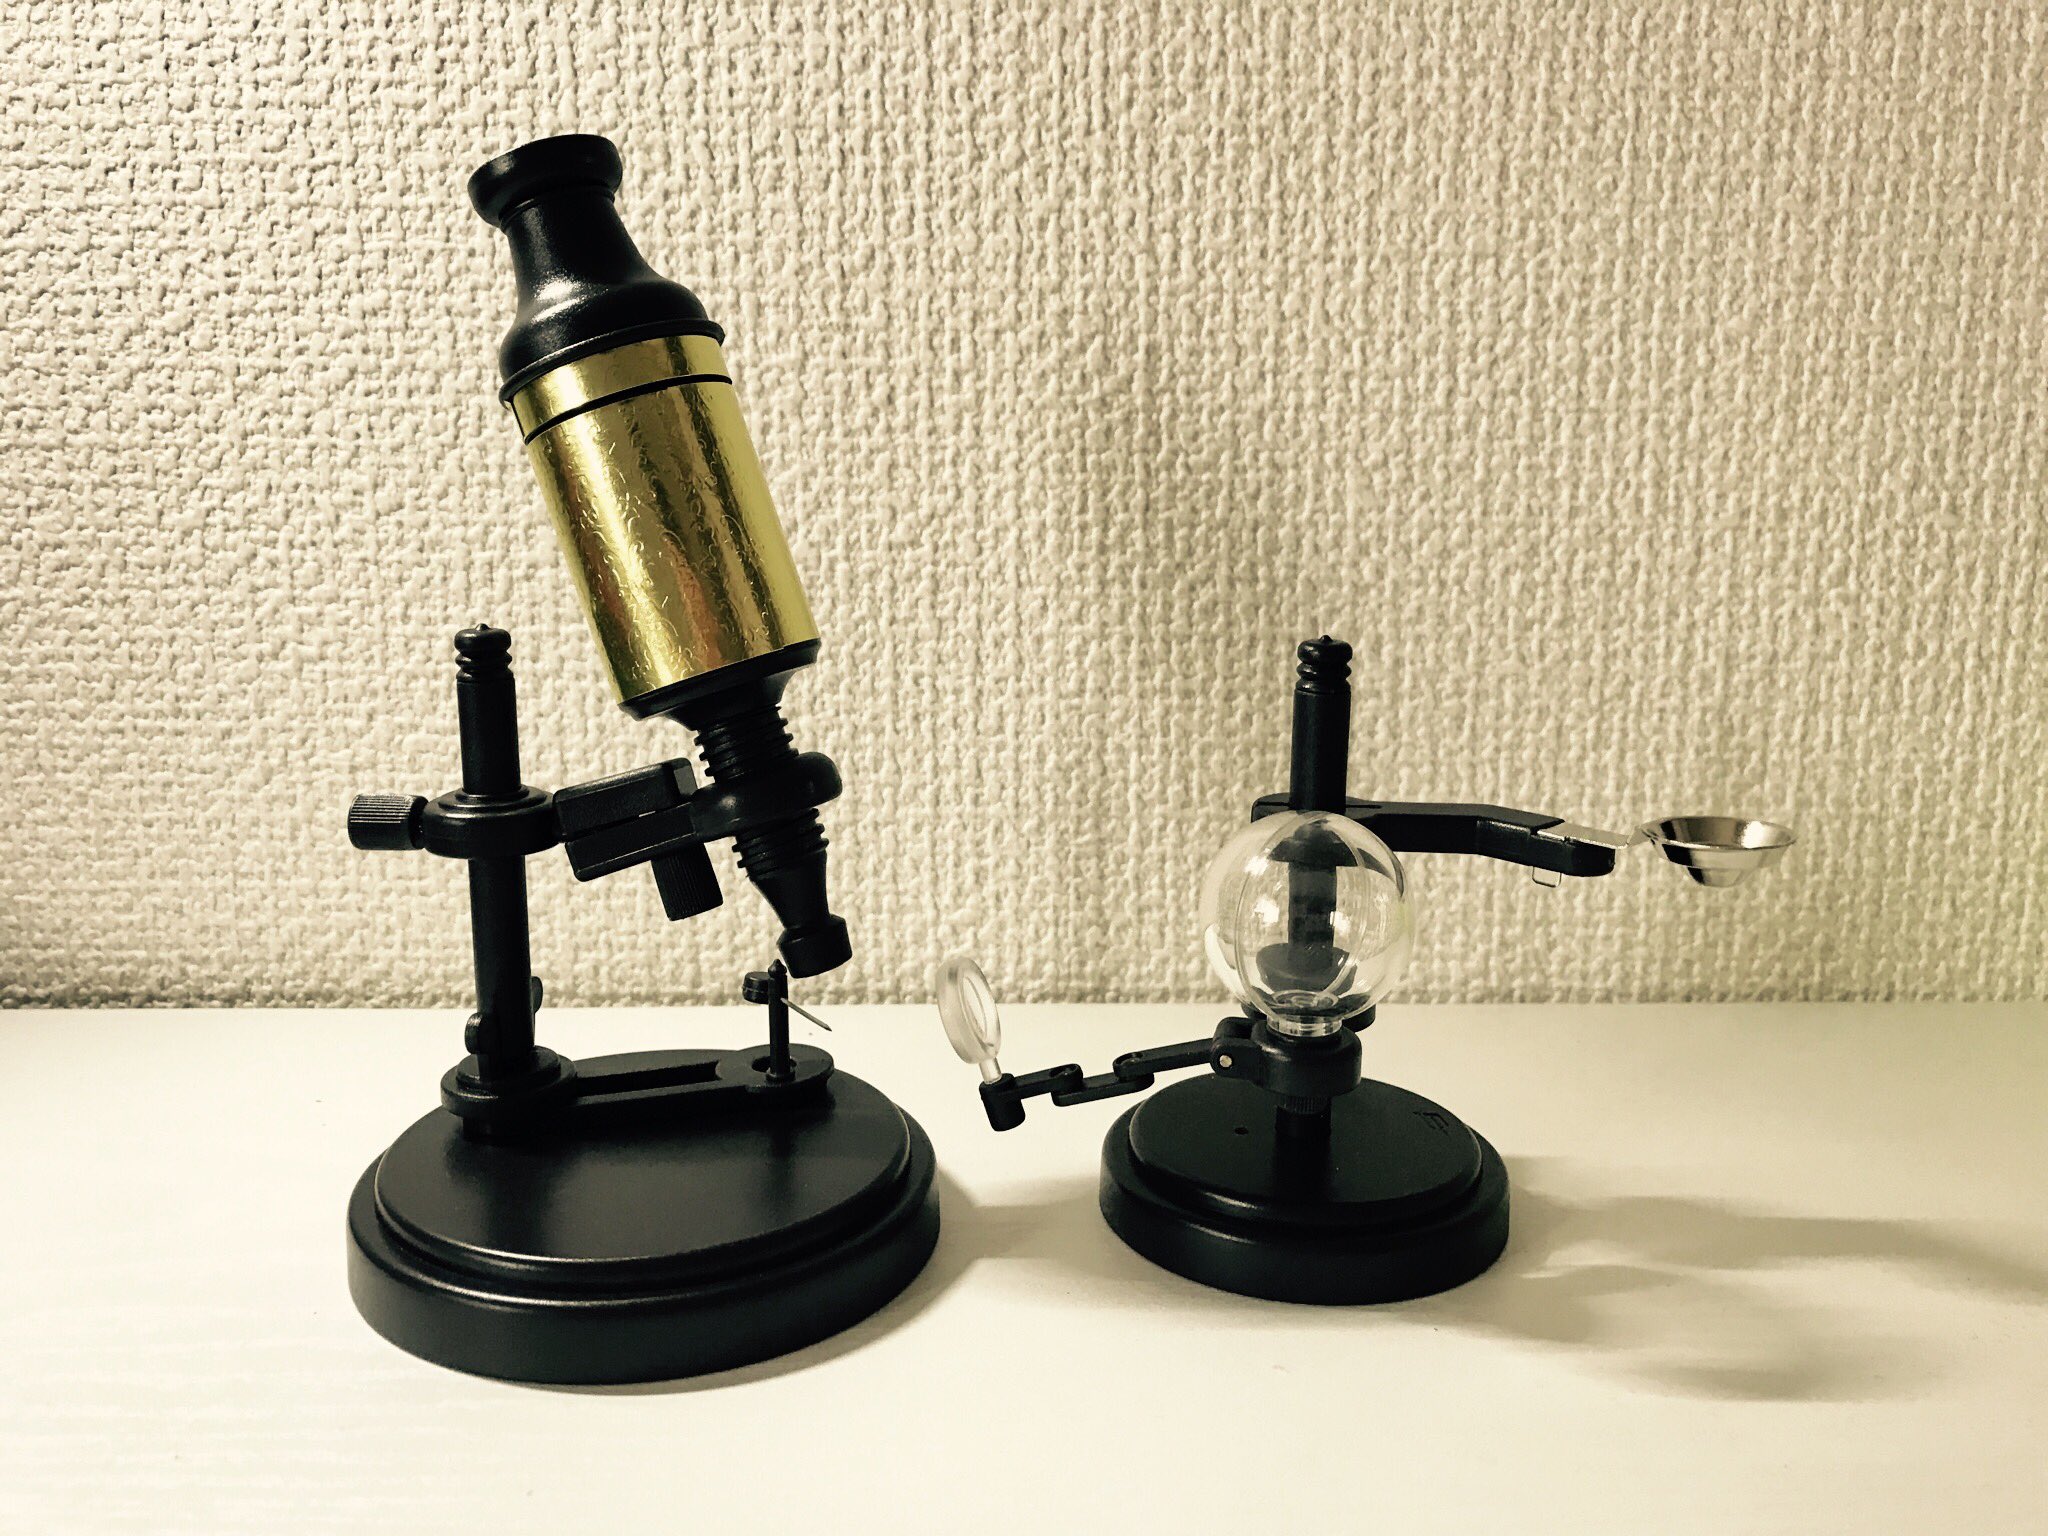 早川昌志 ミクロ ライフpj Twitter પર ロバート フックの顕微鏡 レプリカ 大人の科学付録より 生物学の最初に必ず紹介されるお話として ロバート フックはこの顕微鏡でコルクを見て 細胞 Cell と命名したエピソードはとても有名